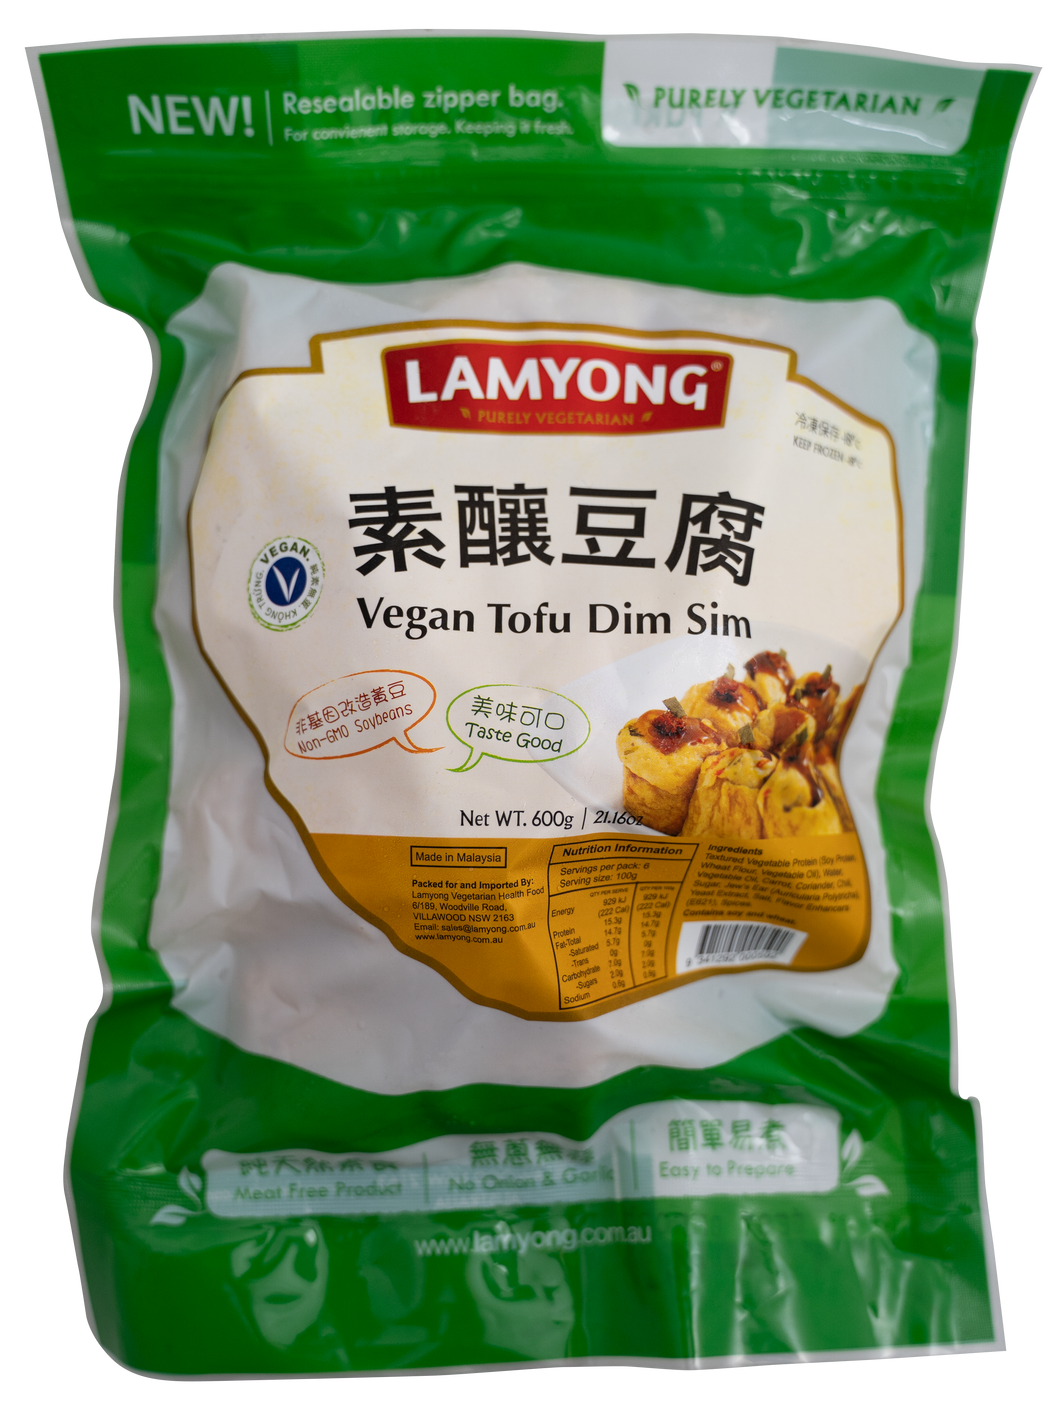 Lamyong Vegan Tofu Dim Sim 600g